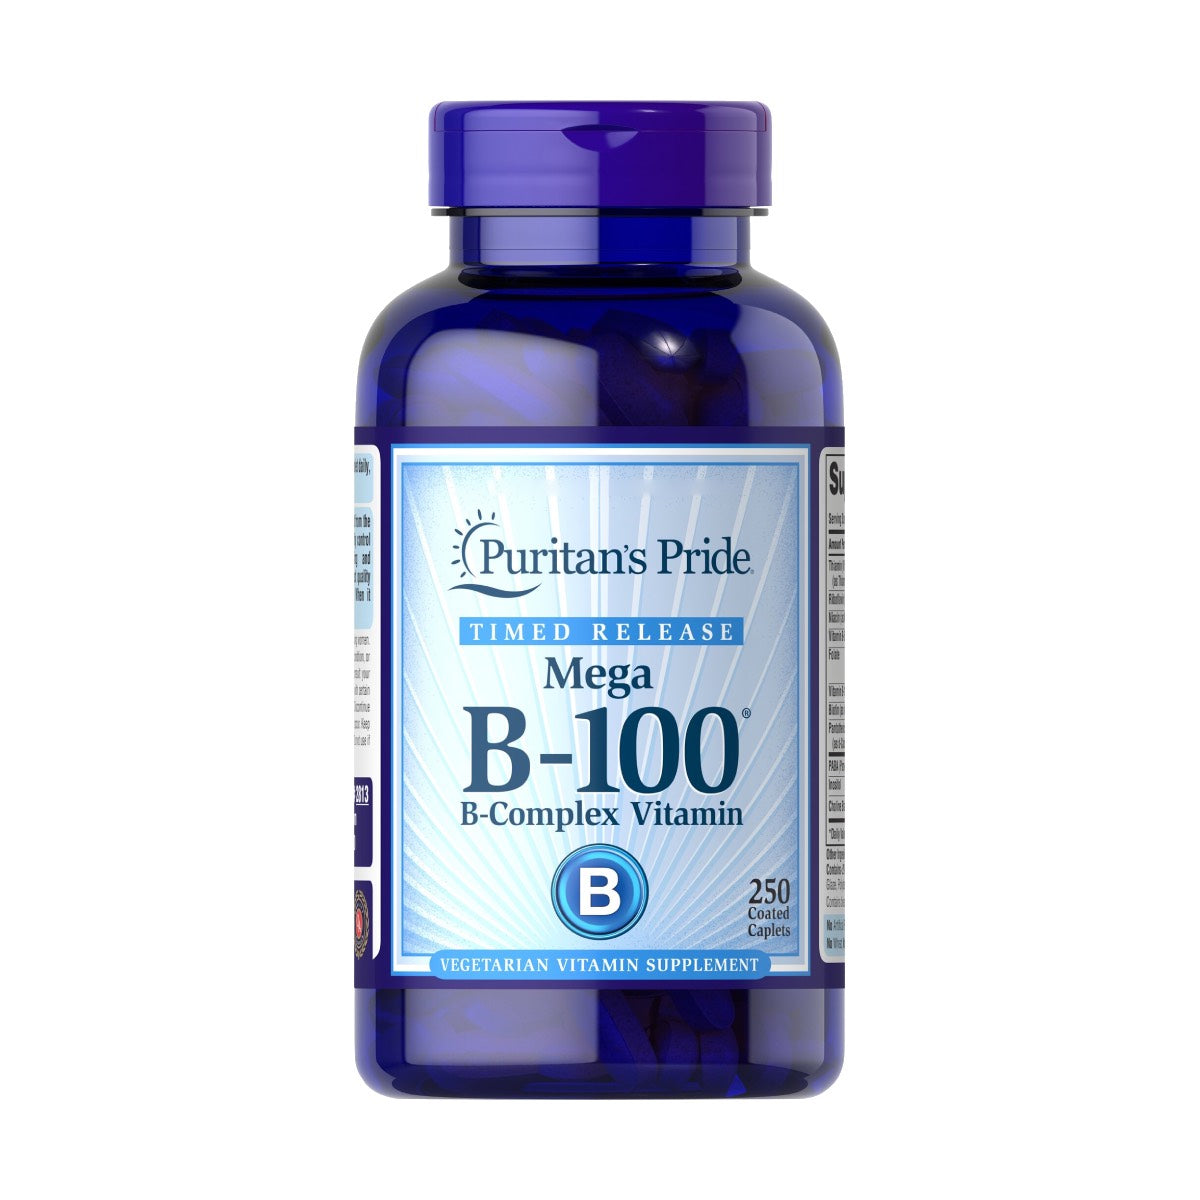 Puritan's Pride, Vitamin B-100 Complex Timed Release